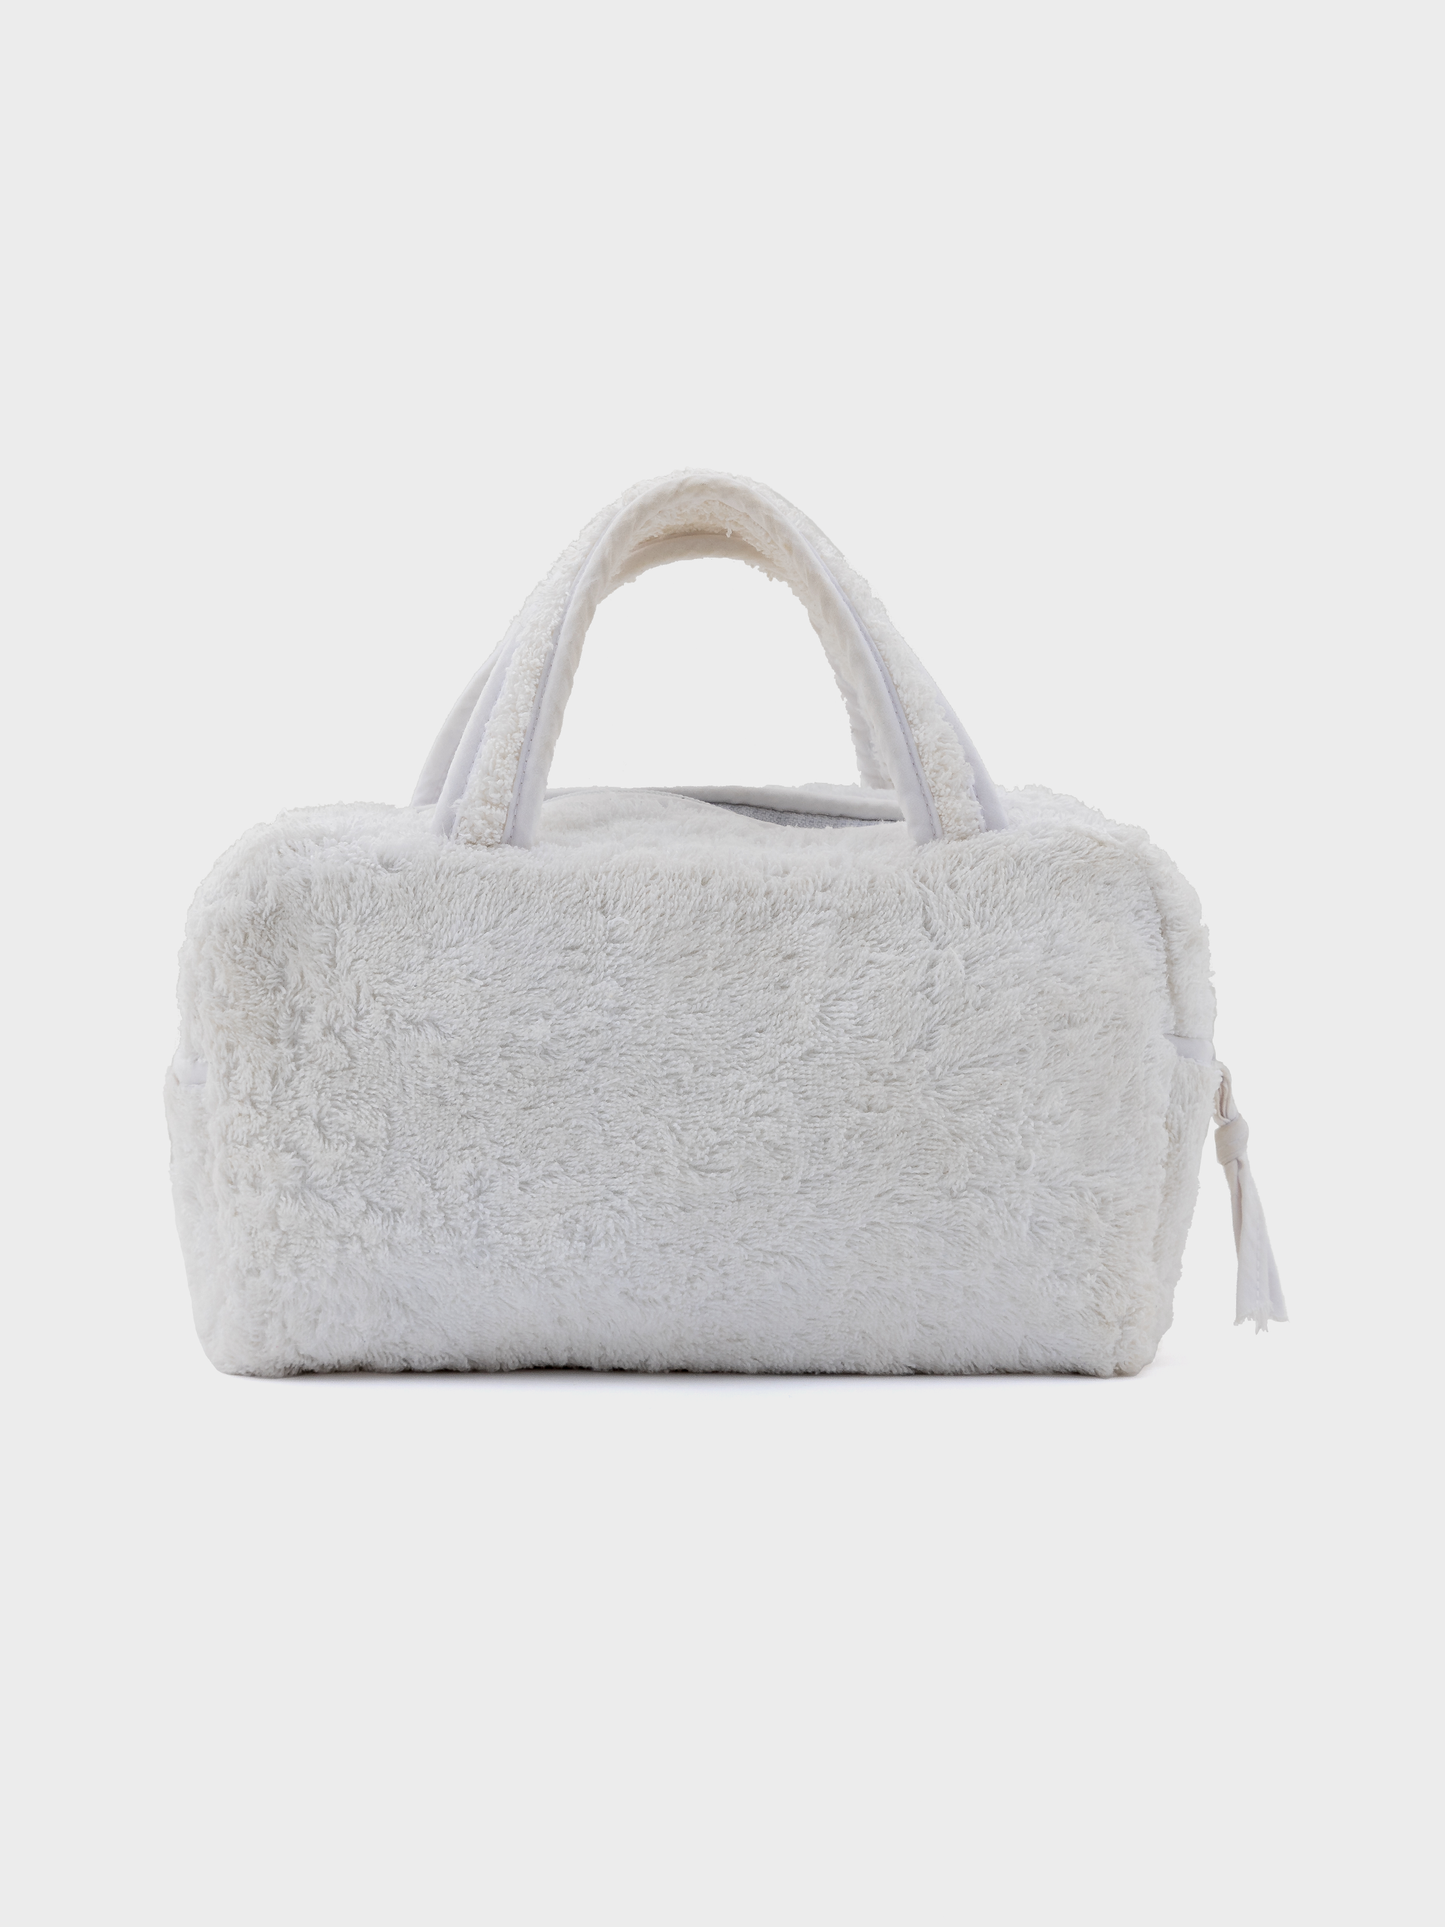 White Terry Cloth Handbag